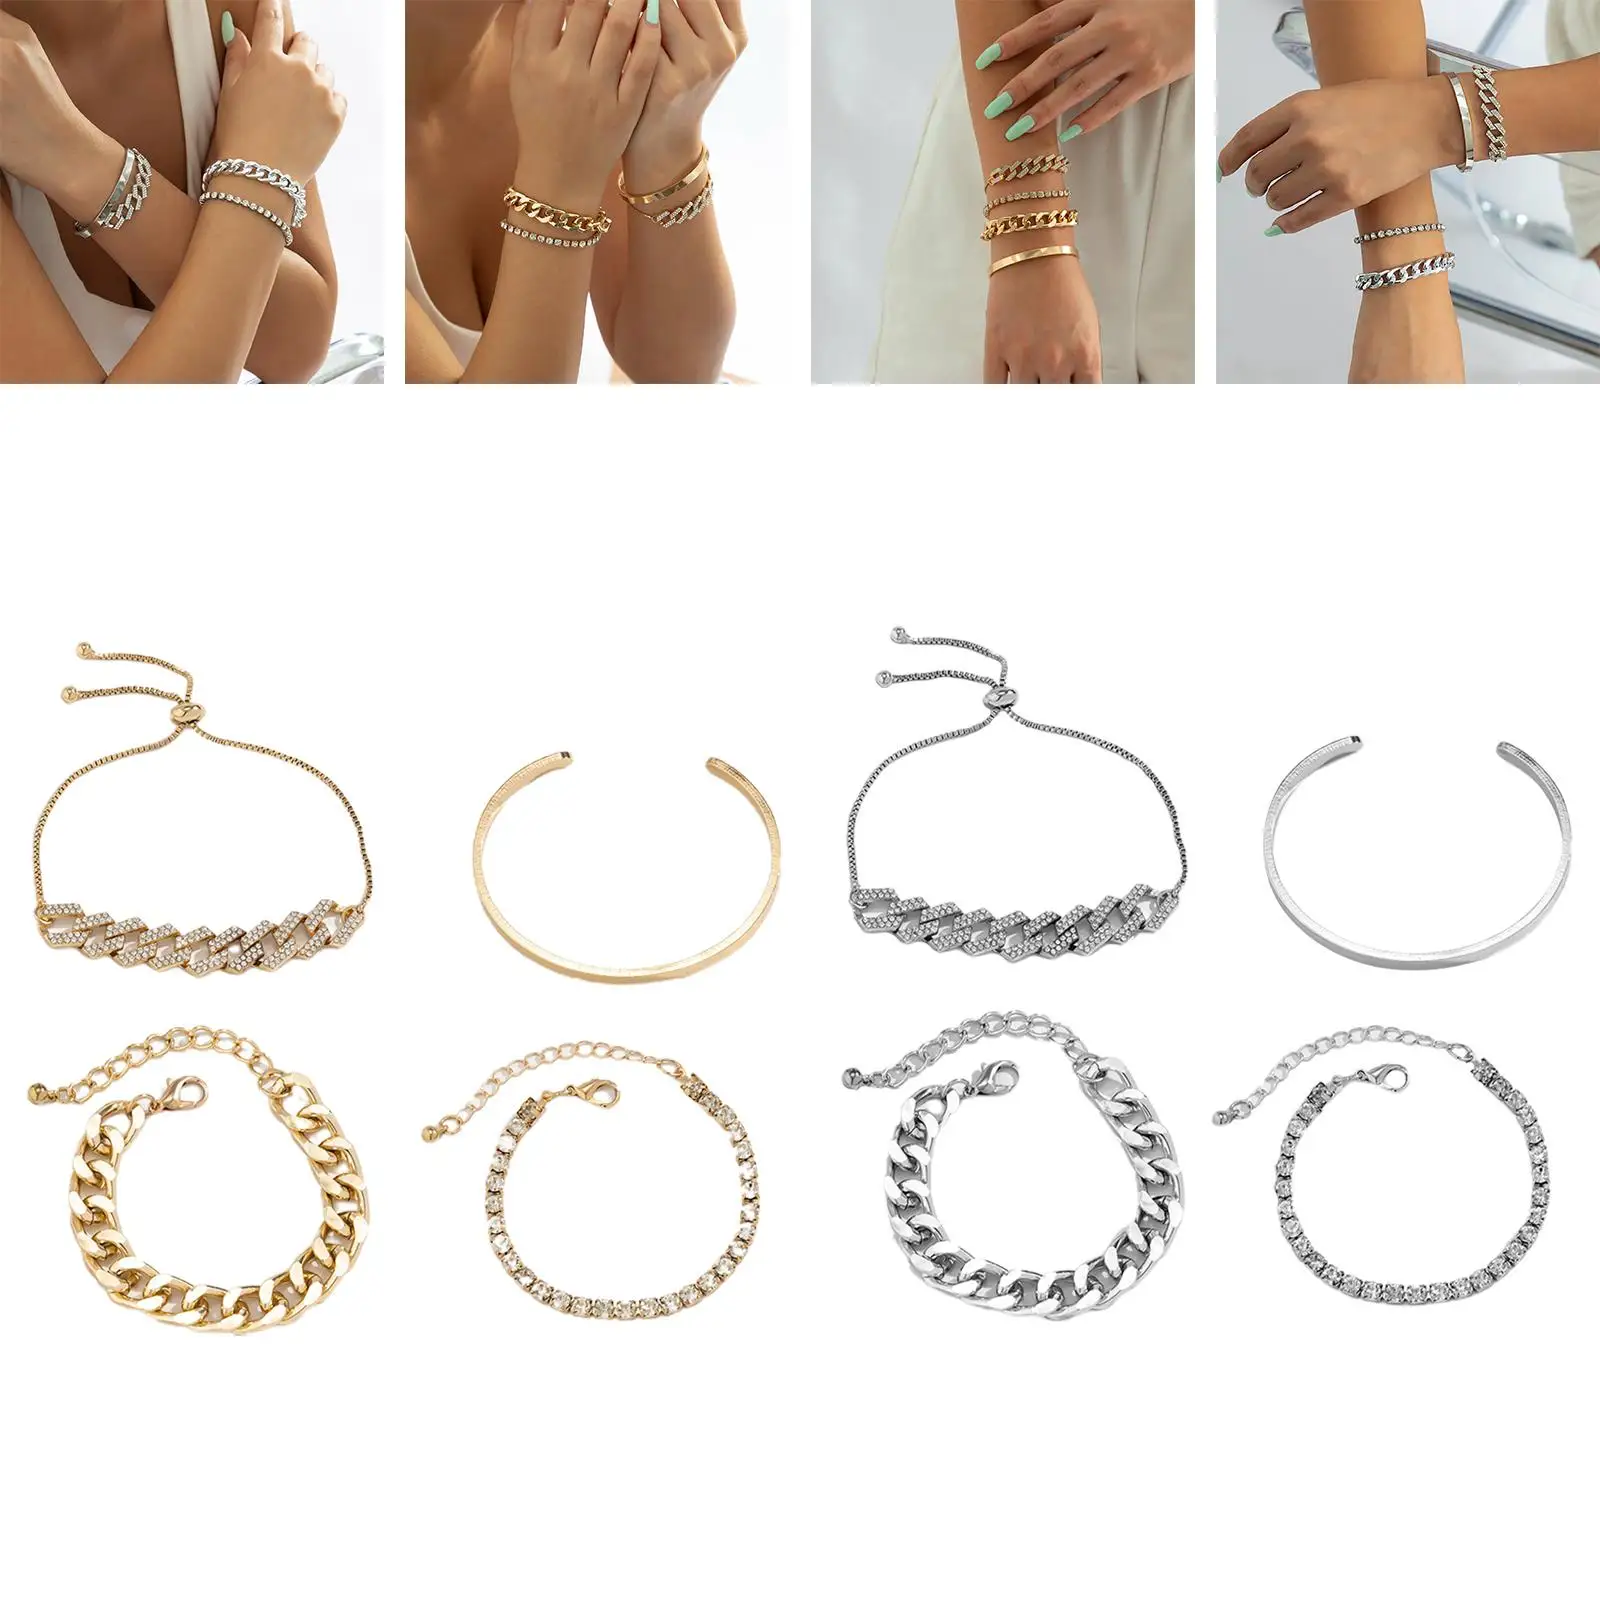 Chunky Wrist Bracelet Glossy Bangle Charm Bracelet Set for Daughter #Women